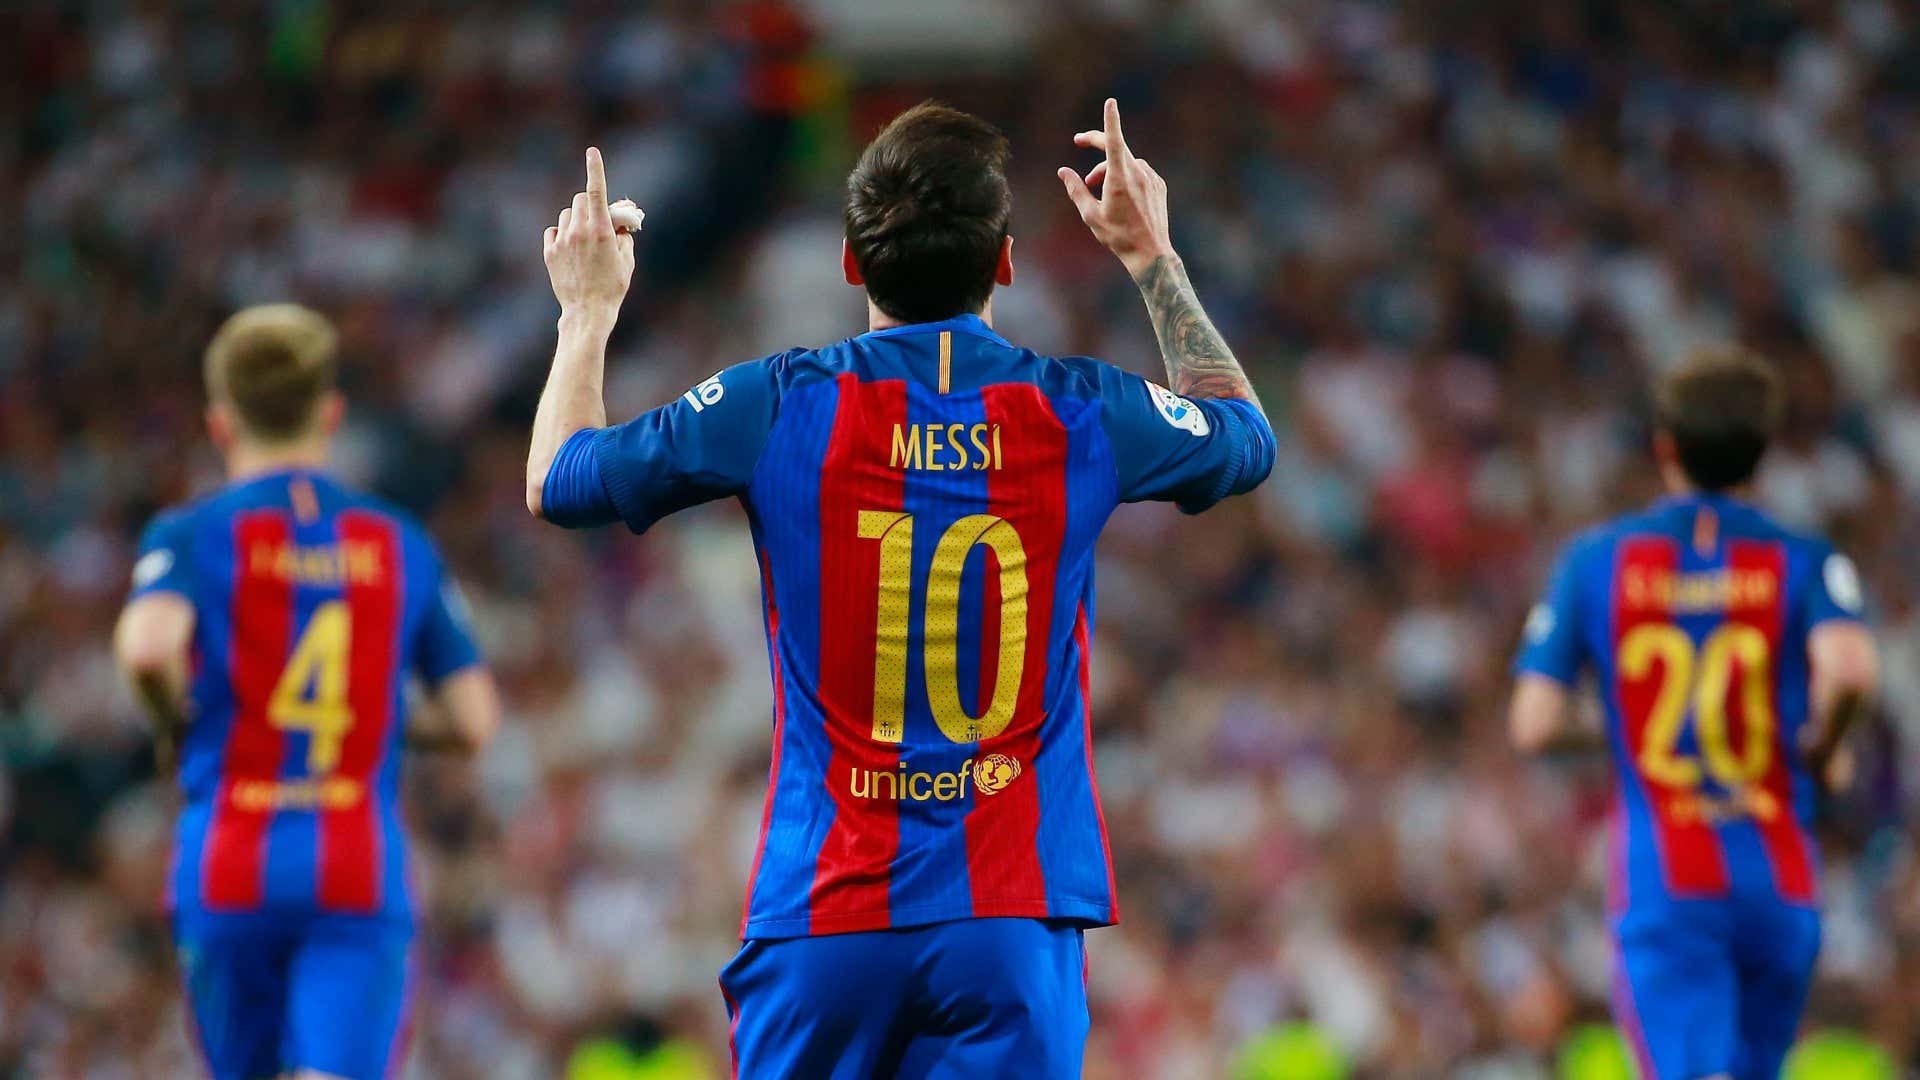 Icon của bóng đá thế giới - Messi đã mang đến những trận đấu hấp dẫn cho người yêu bóng đá. Xem những bàn thắng ấn tượng mà anh đã ghi được trong màu áo Barcelona, bạn sẽ được tận hưởng cảm xúc như bị choáng ngợp bởi tài năng của Messi.